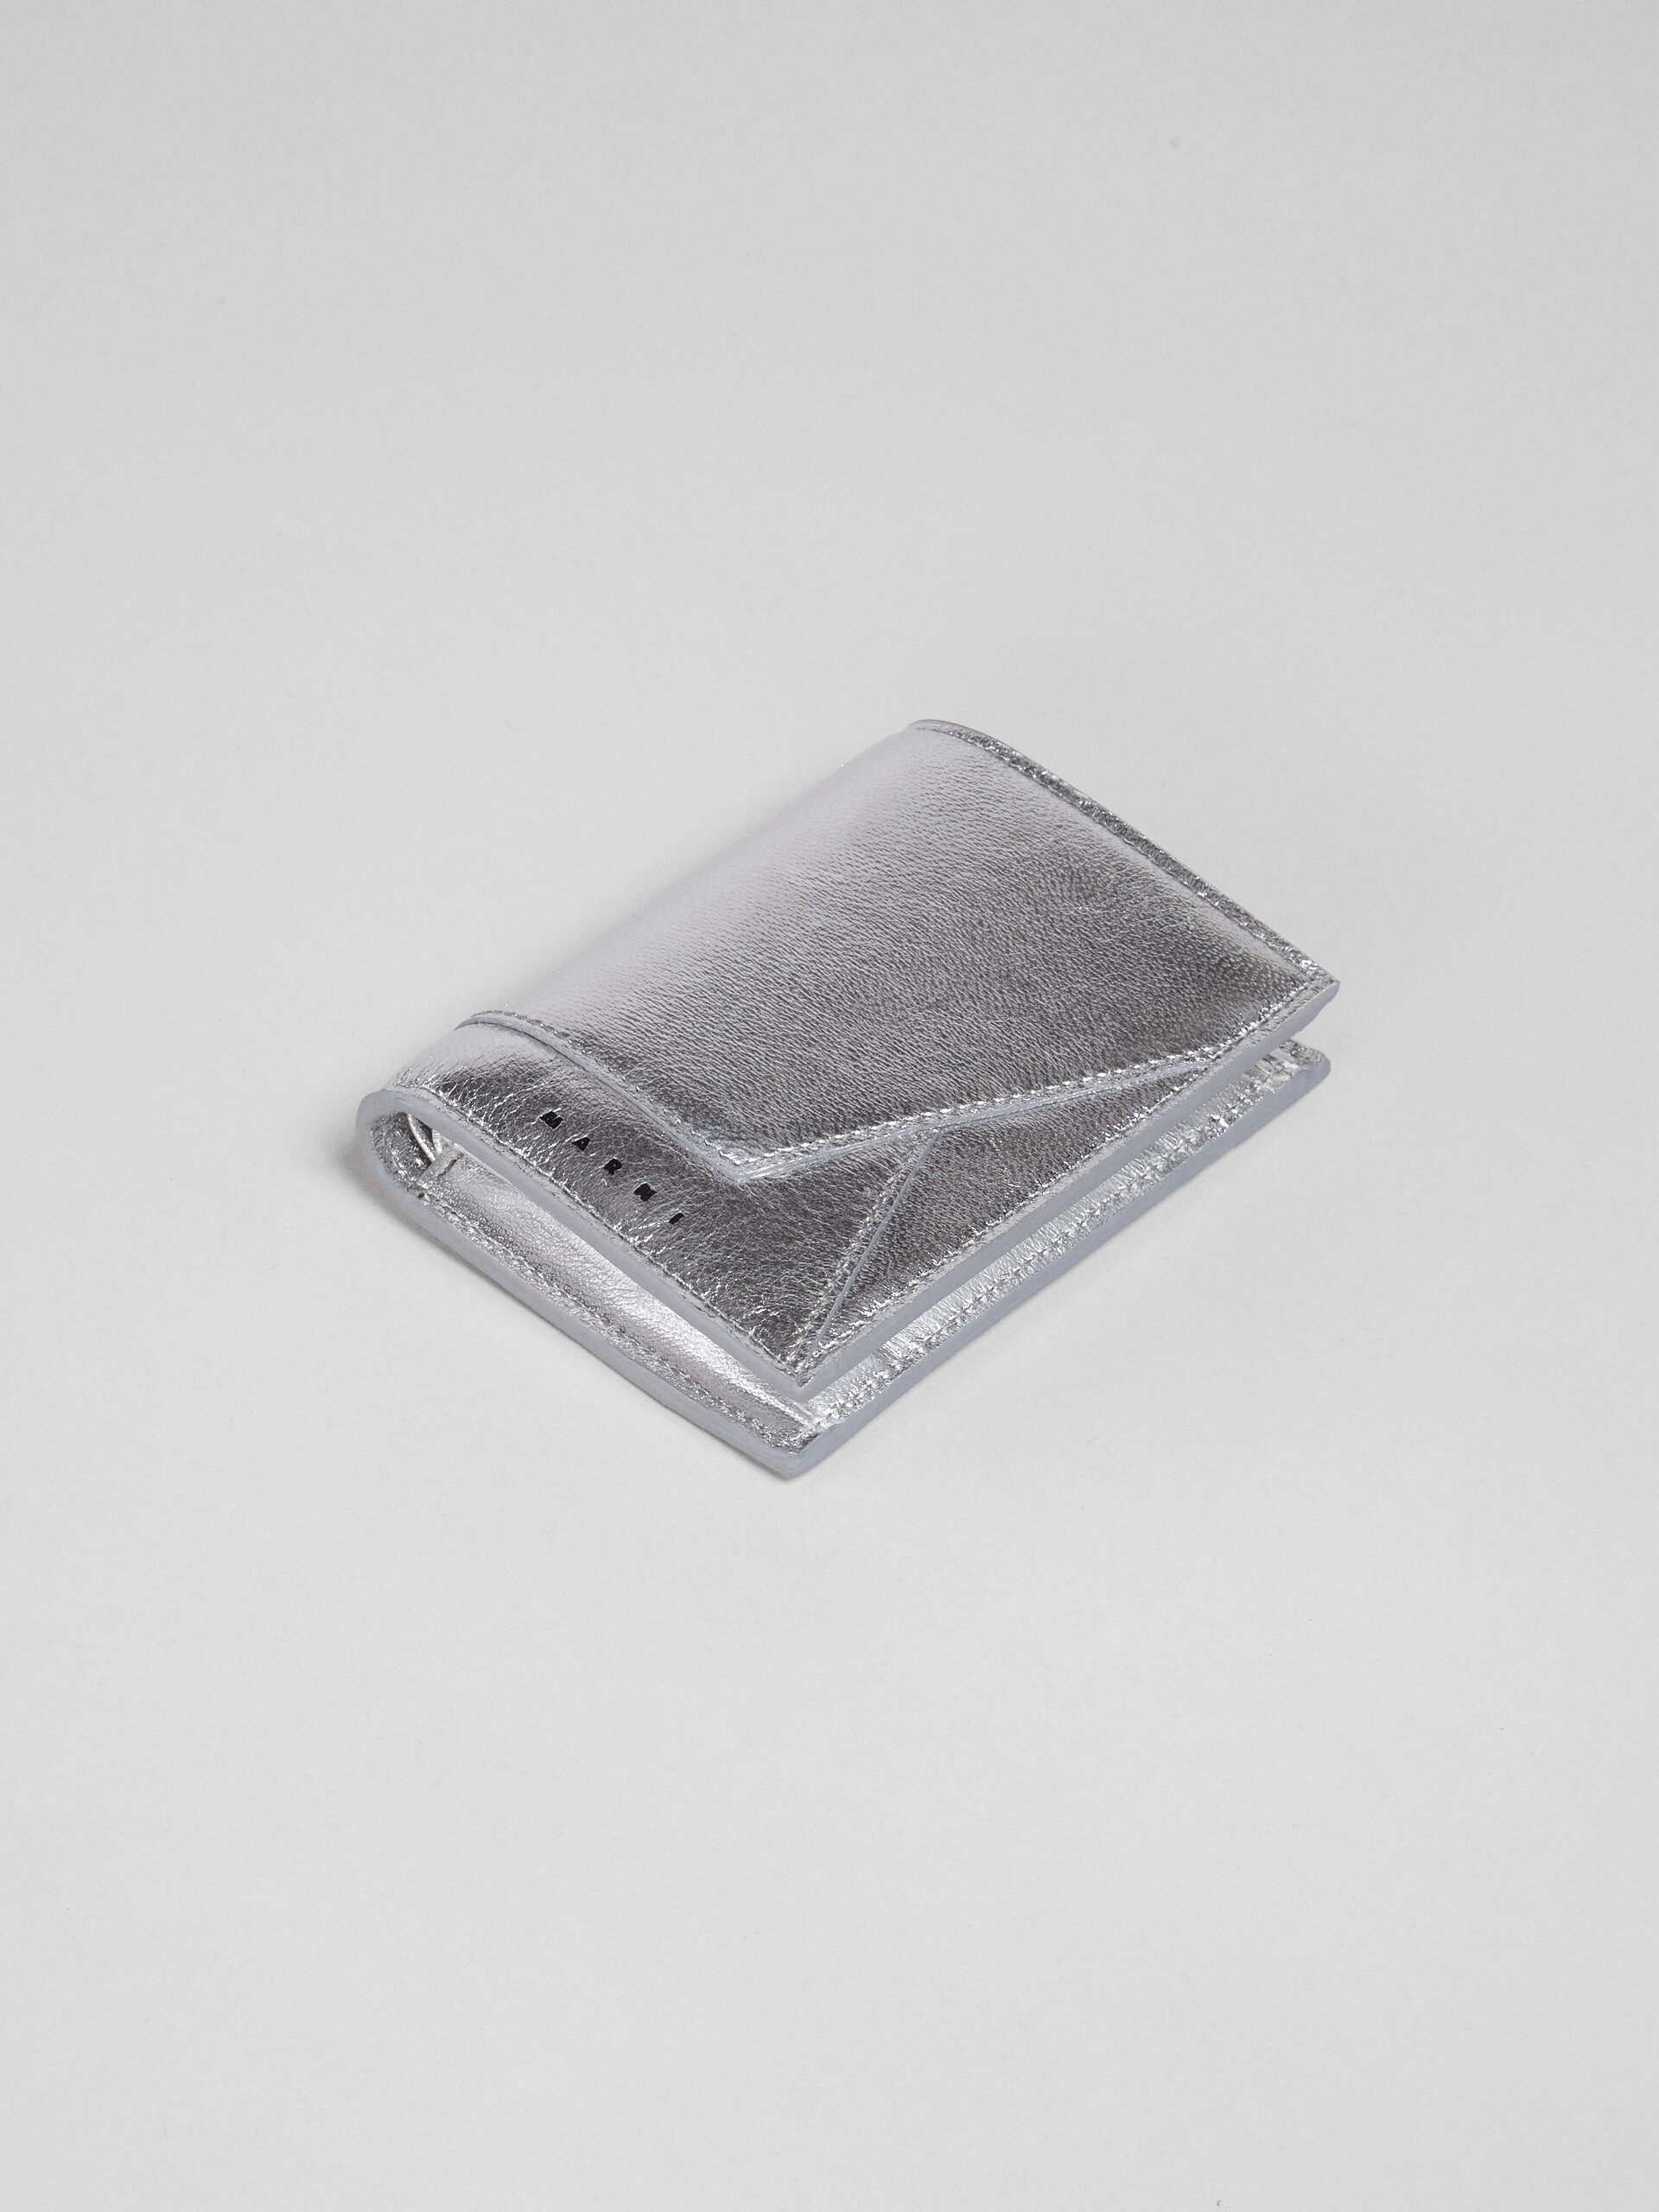 Silver metallic leather bi-fold wallet - Wallets - Image 4